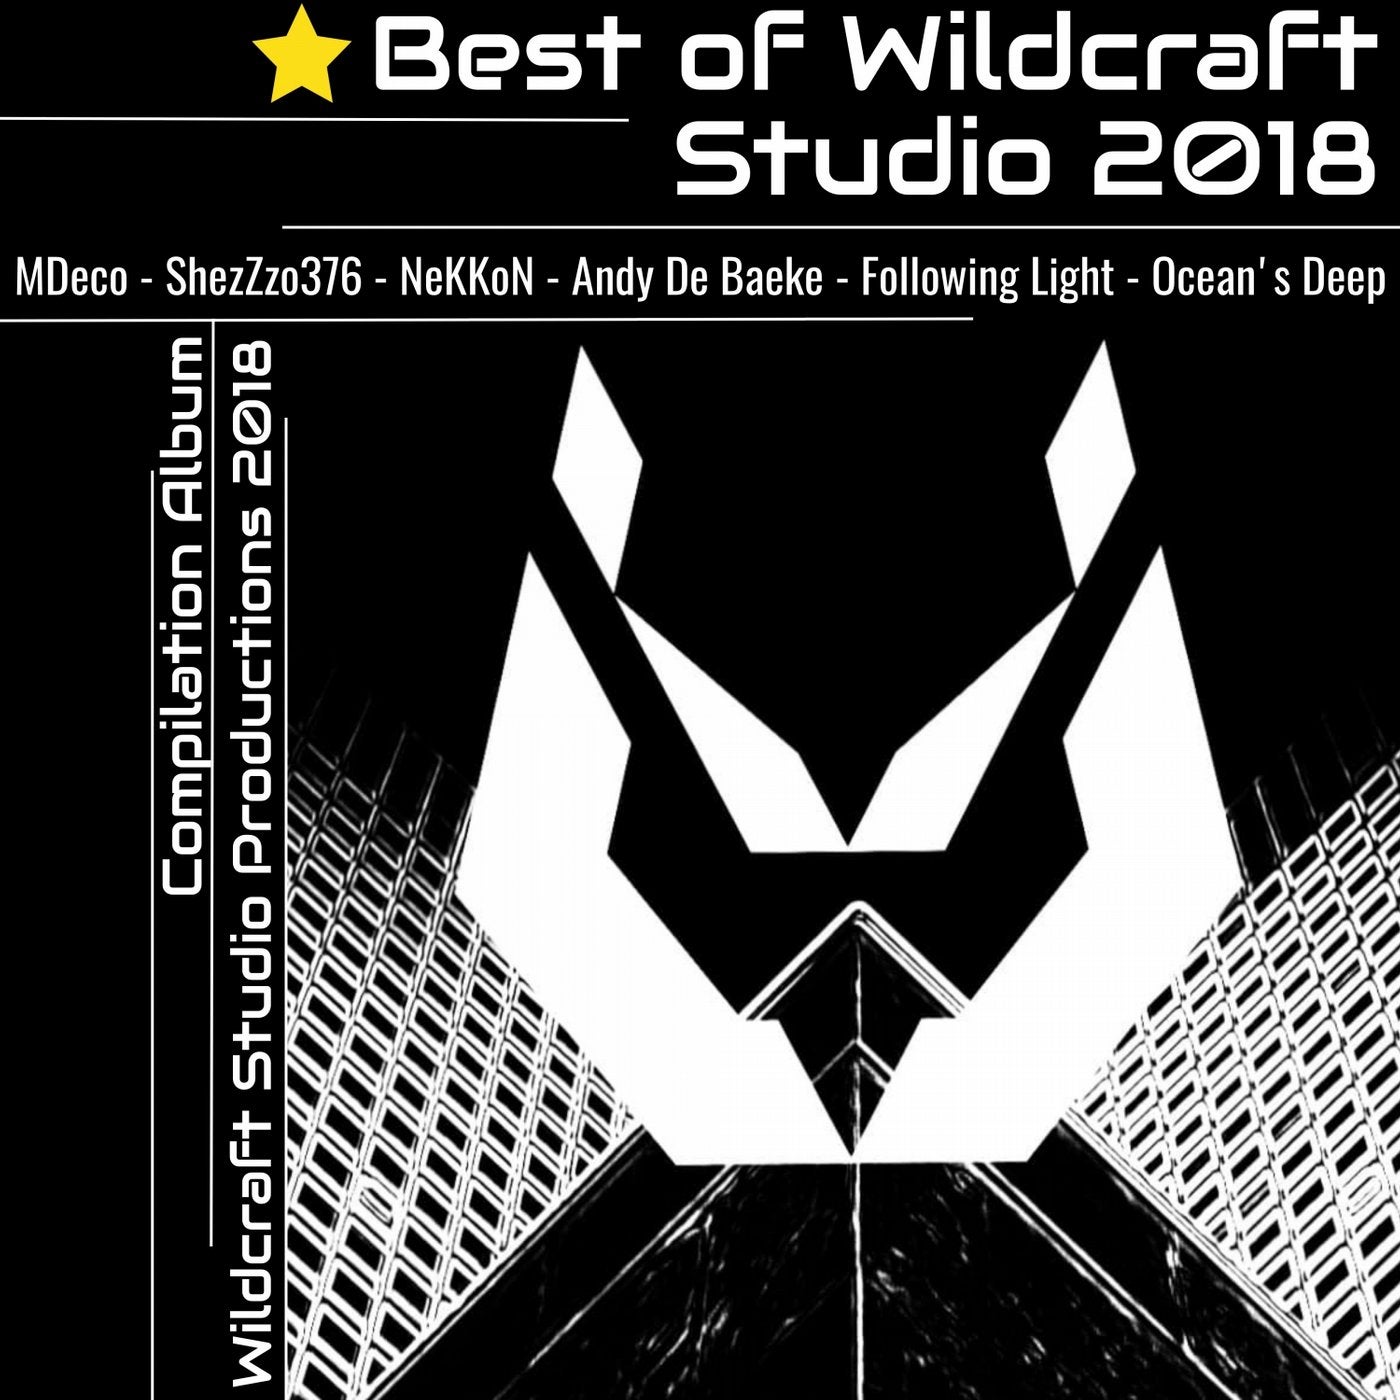 Best of Wildcraft